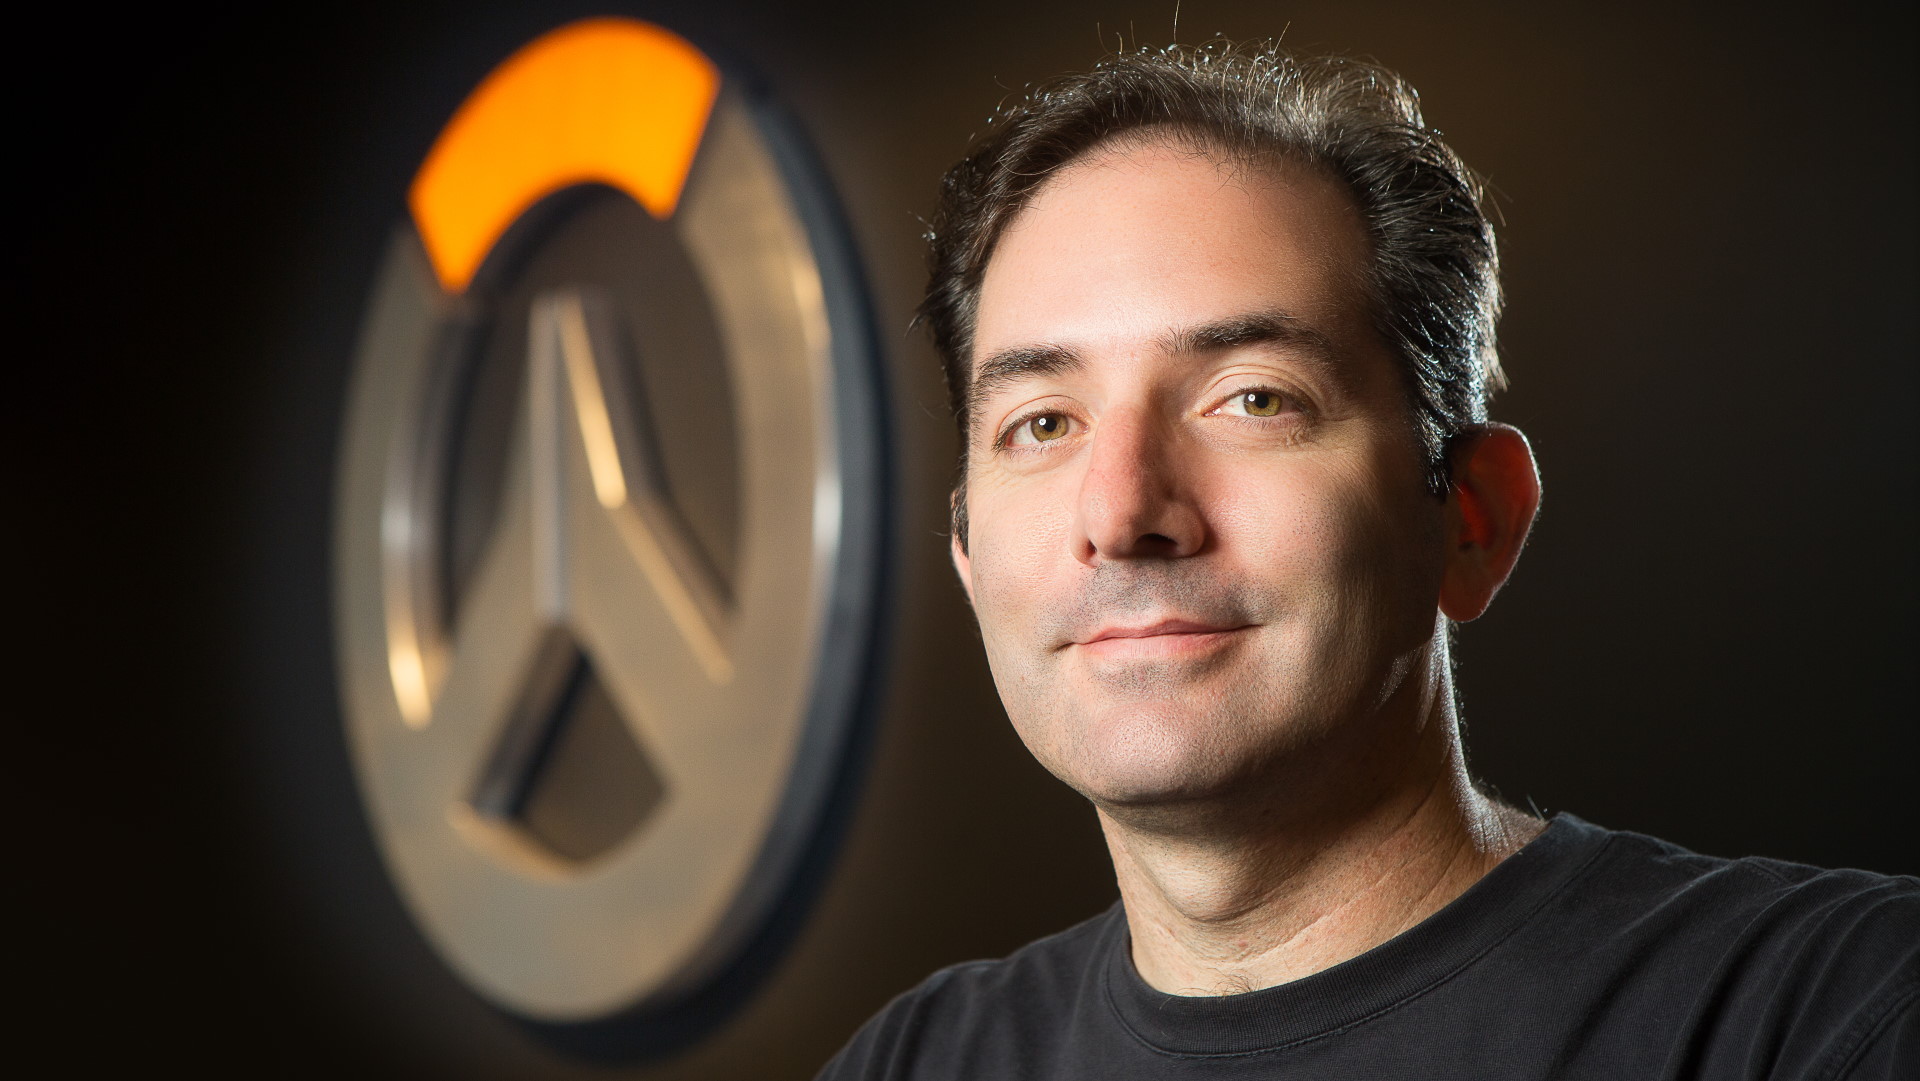 Jeff Kaplan ผู้กำกับมากฝีมือจากเกม Overwatch ประกาศลาออกจากบริษัท Blizzard แล้ว หลังทำงานมาเป็นเวลากว่า 19 ปี